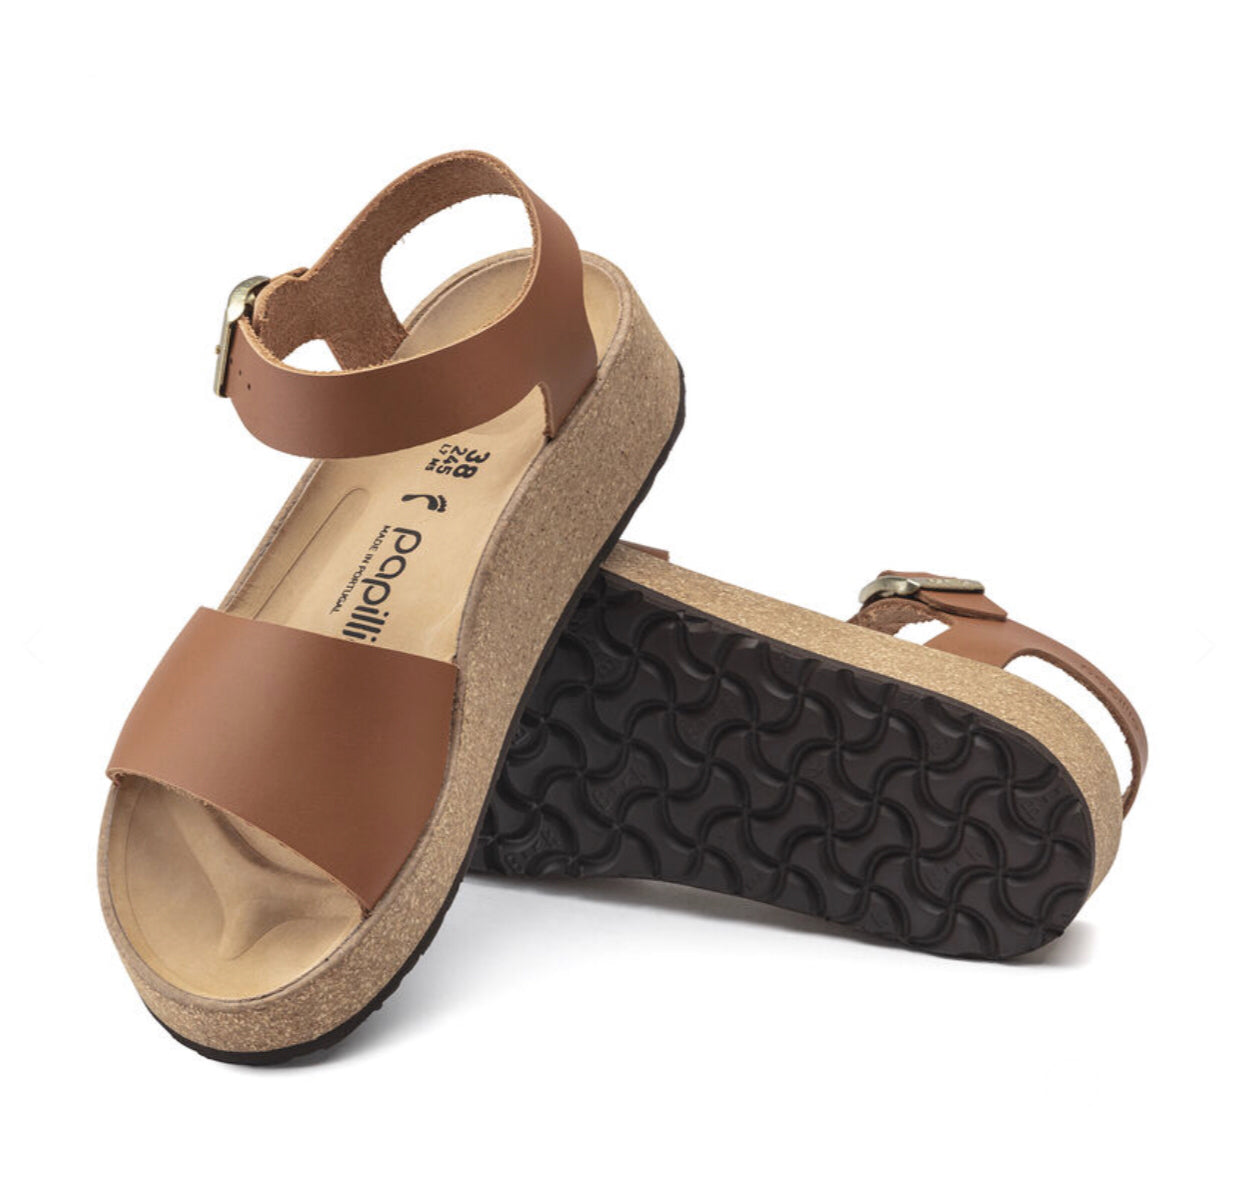 Papillio By Birkenstock Glenda Ginger Brown Wedge Sandal Made In Portugal